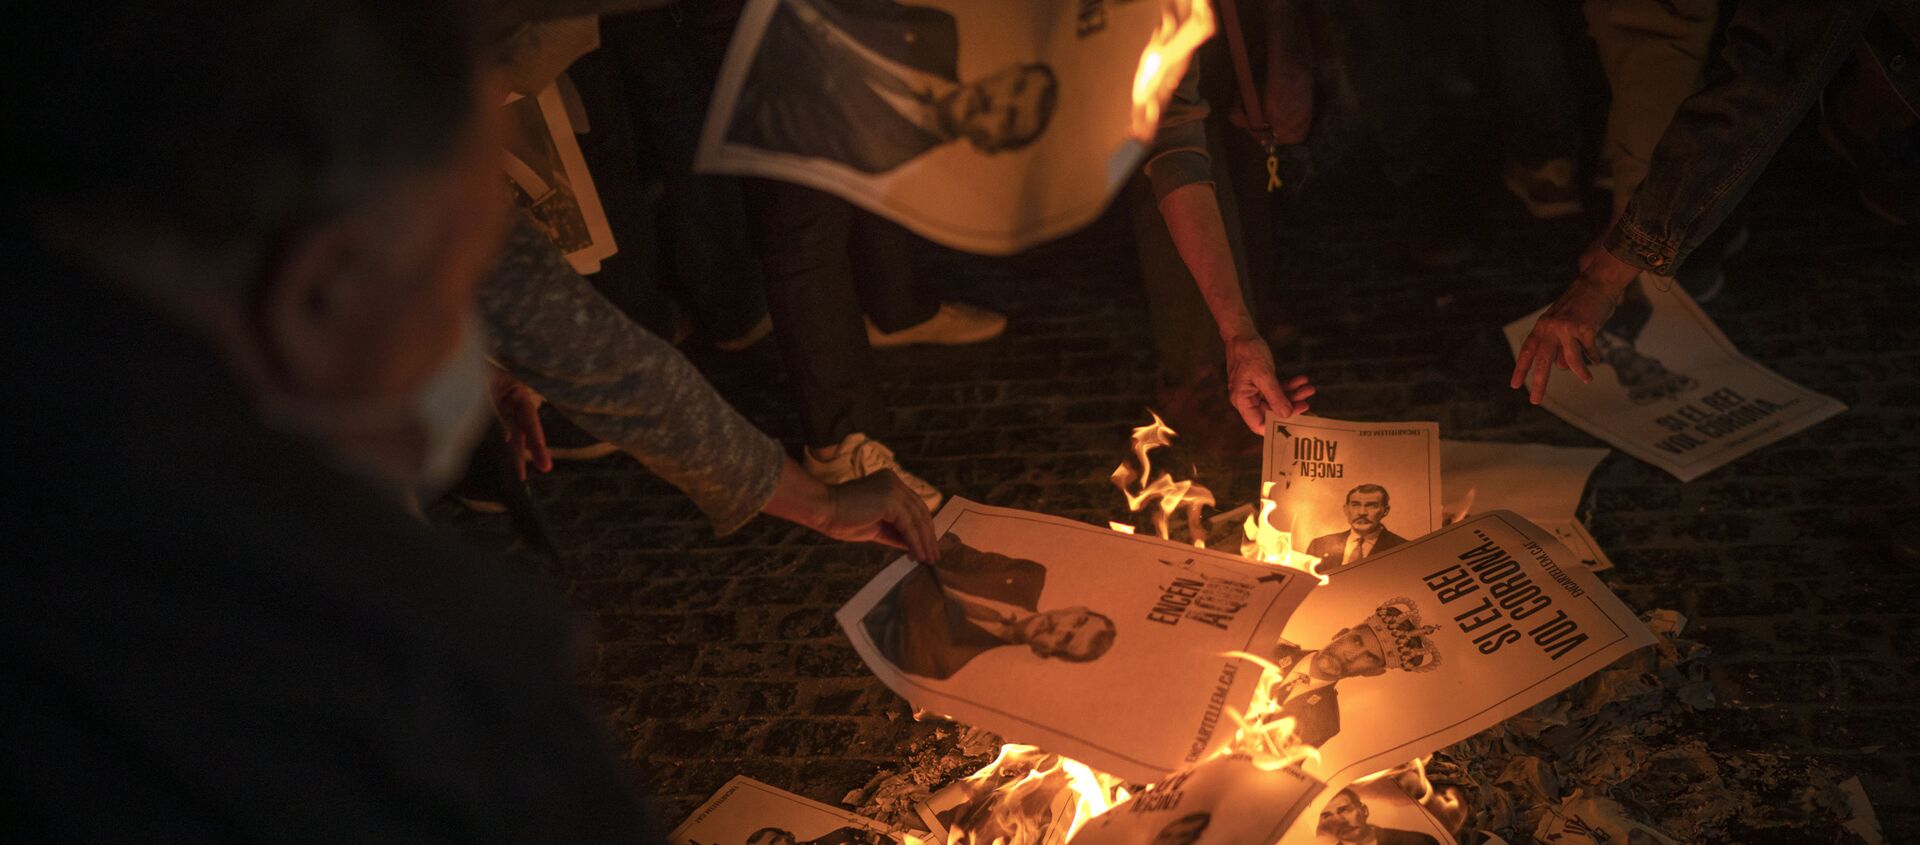 Manifestantes independentistas catalanes queman fotos del rey Felipe VI. Barcelona, 8 de octubre 2020 - Sputnik Mundo, 1920, 09.10.2020